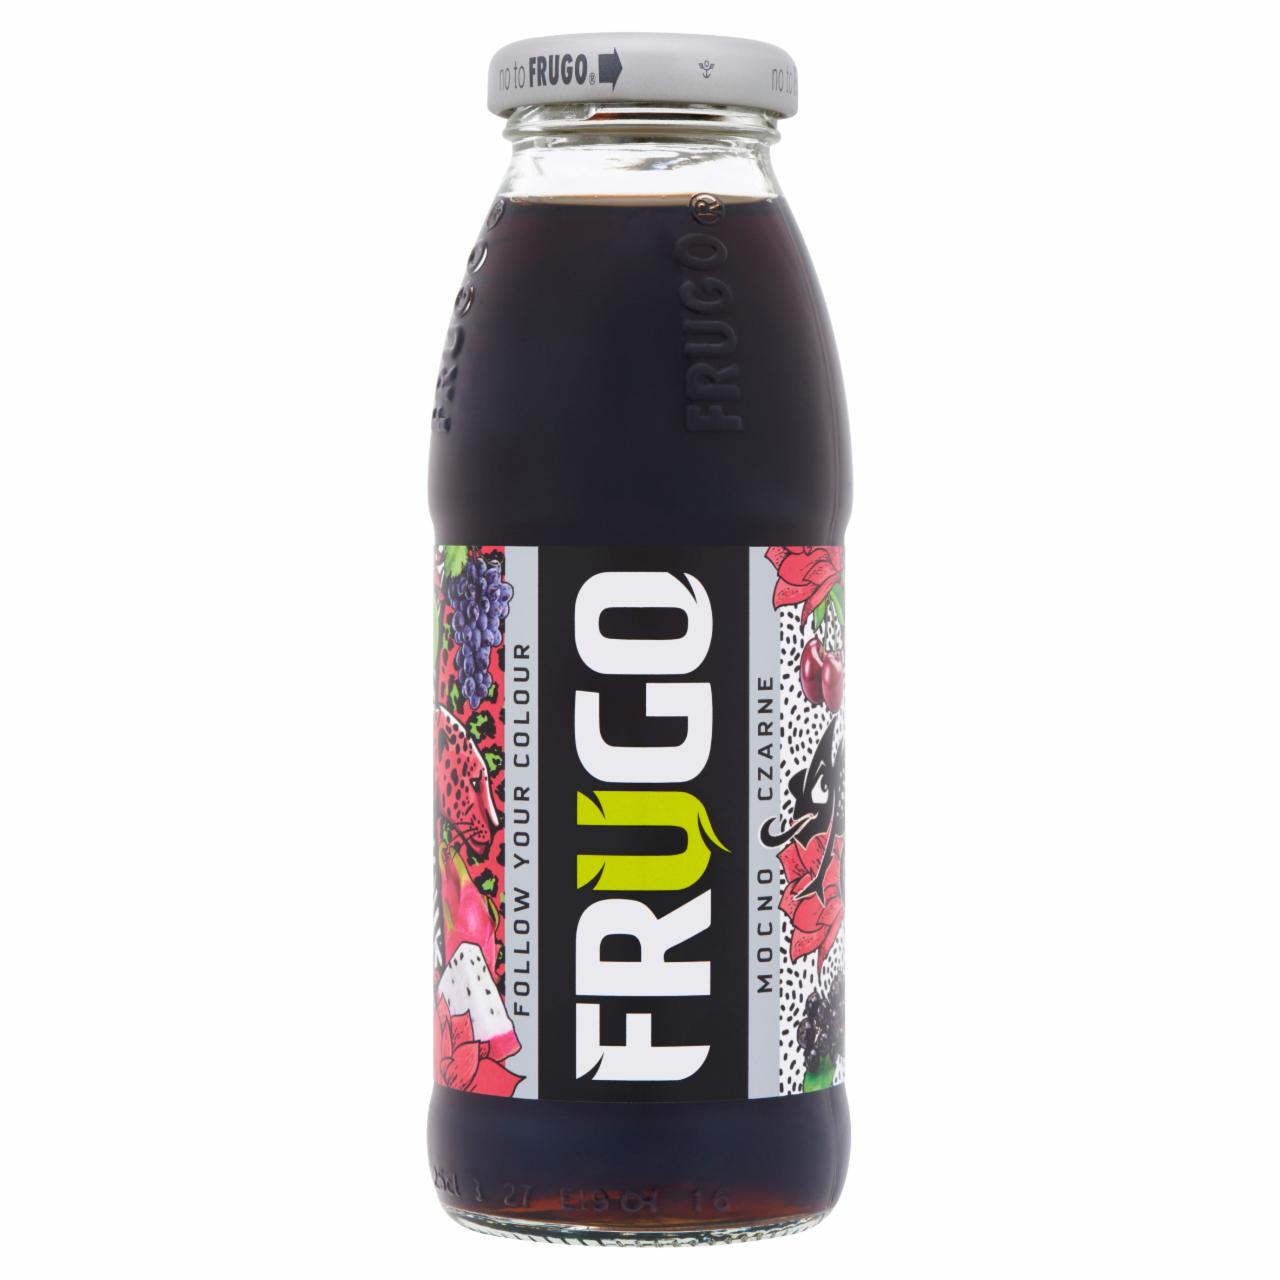 Képek - Frugo Fekete szénsavmentes vegyes gyümölcsital 250 ml